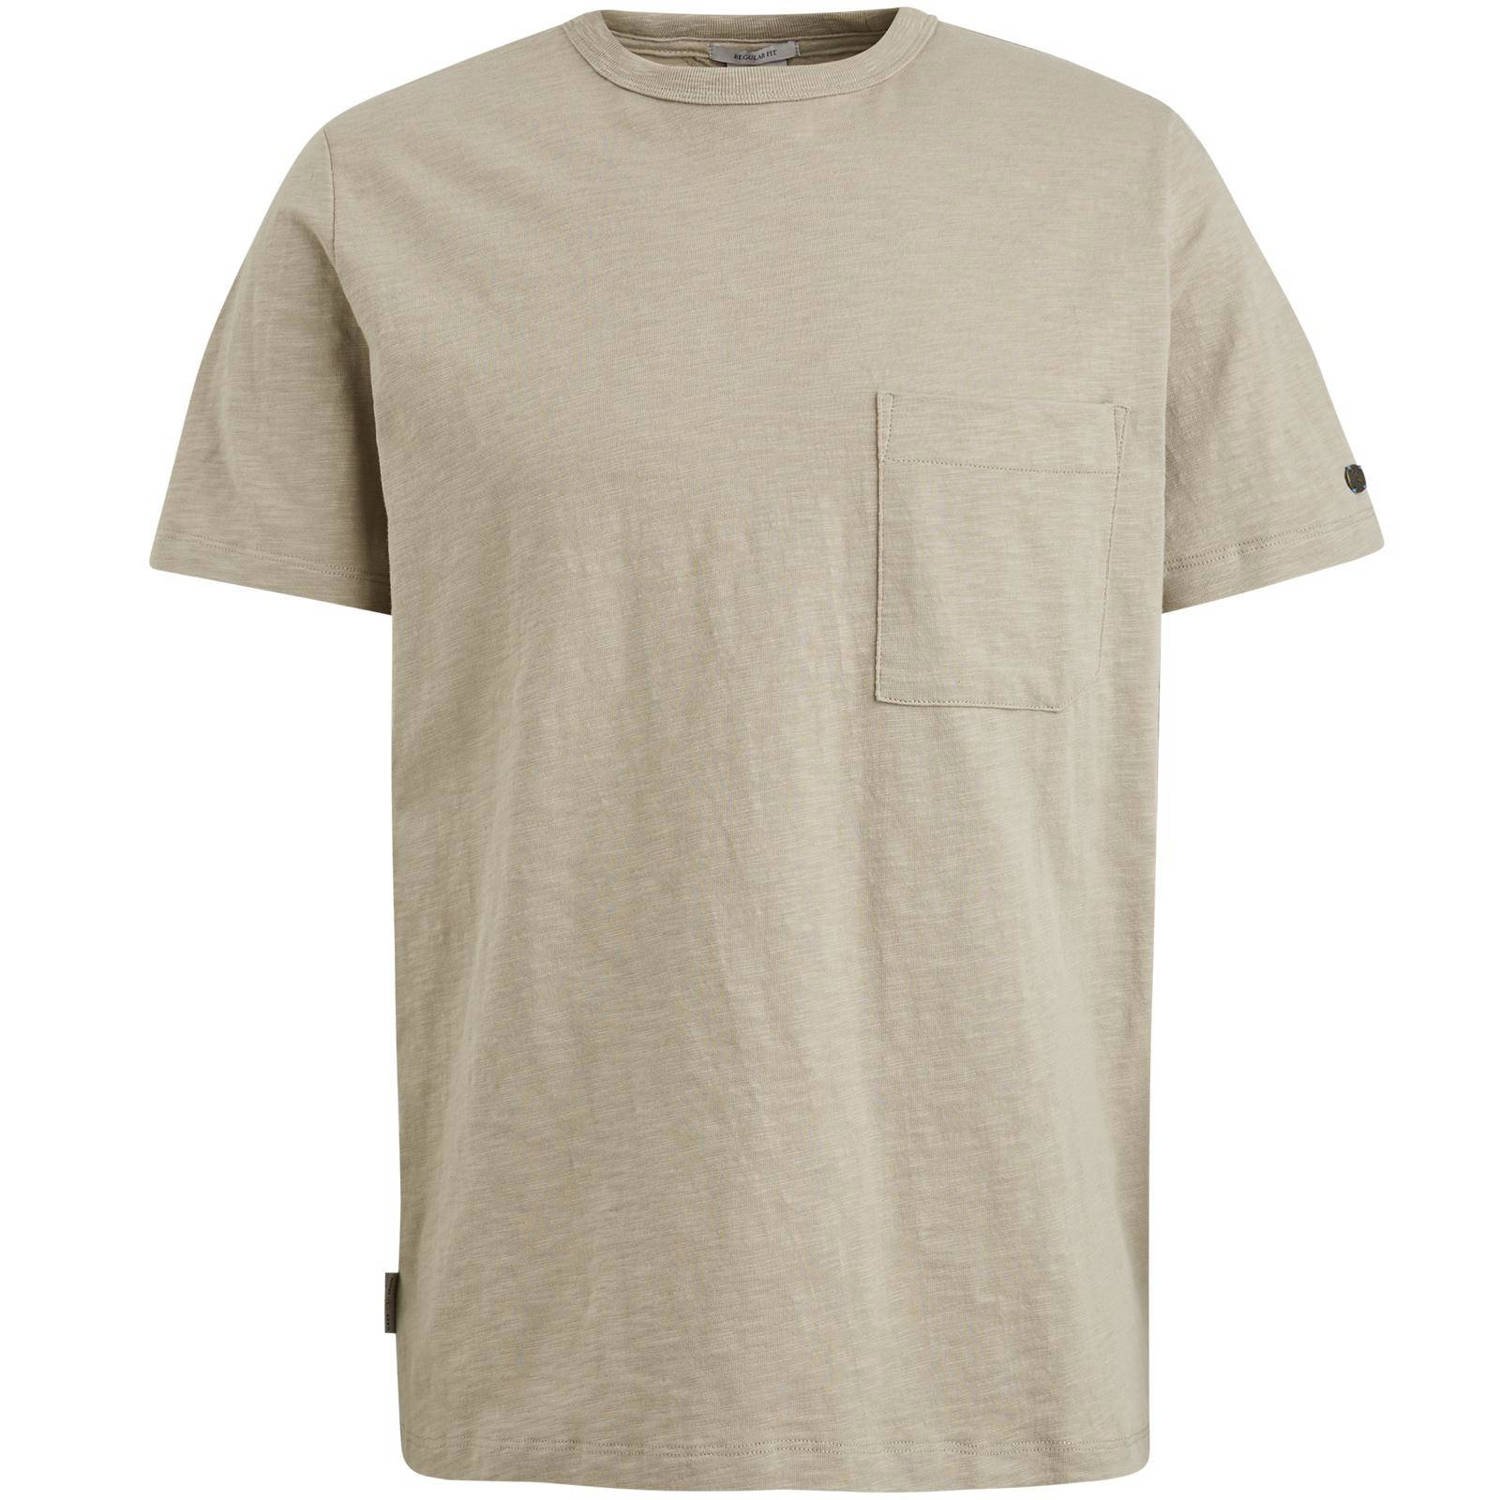 Cast Iron regular fit T-shirt beige